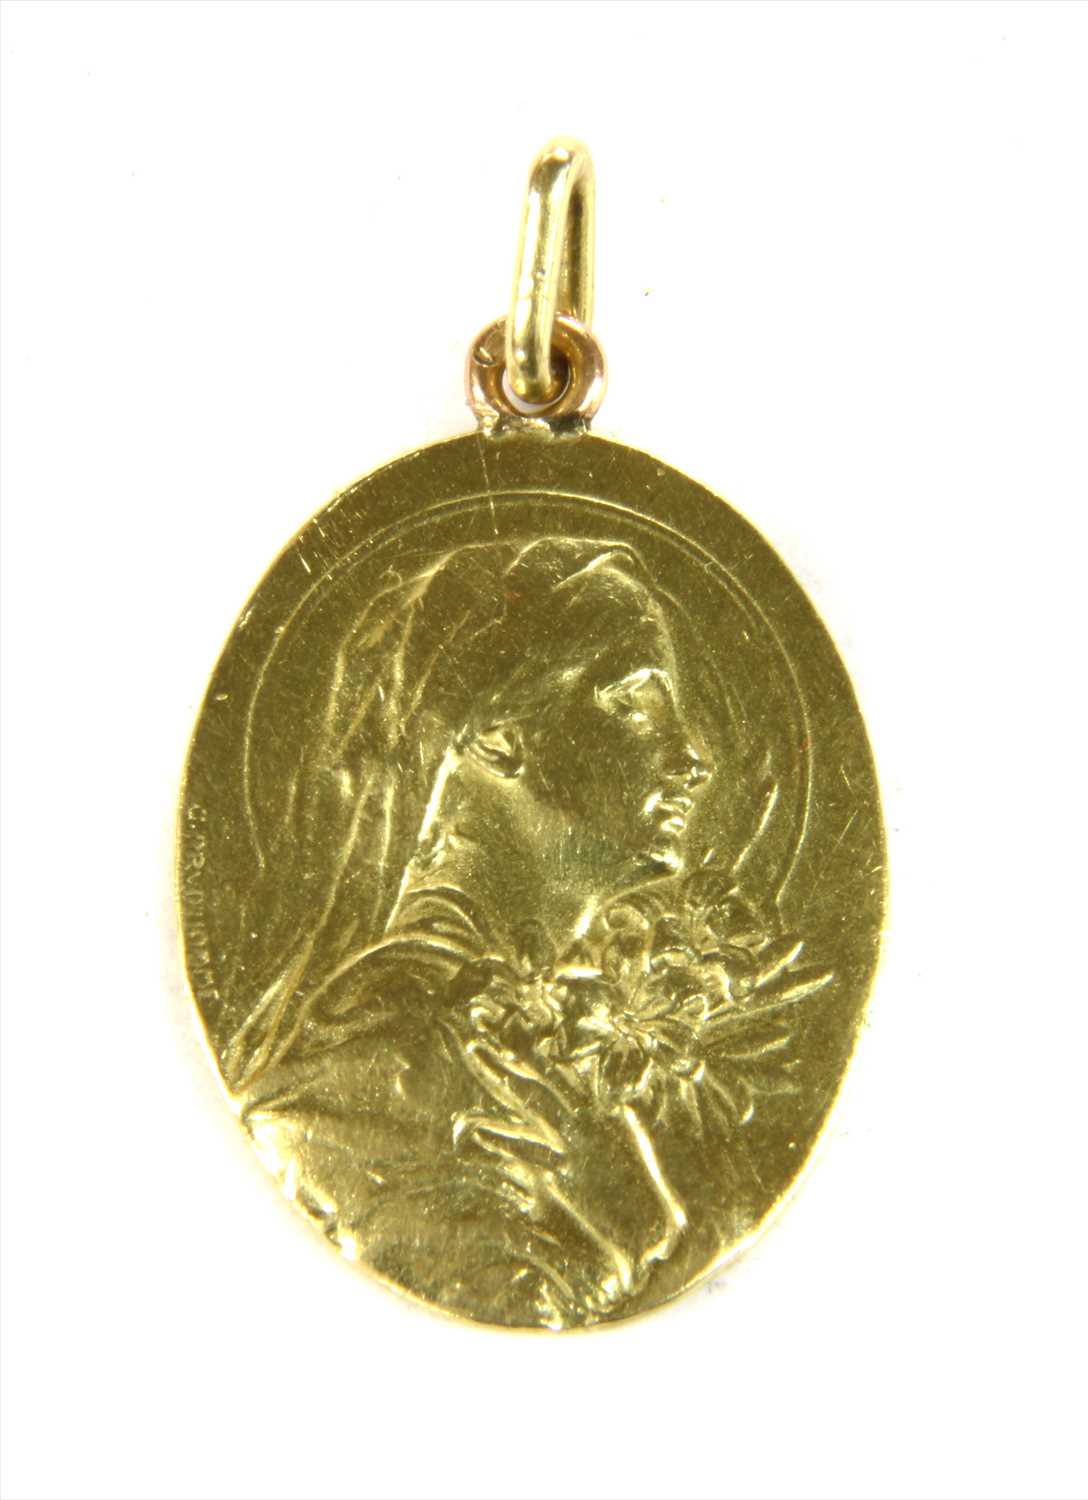 Lot 25 - An Art Nouveau gold medallion